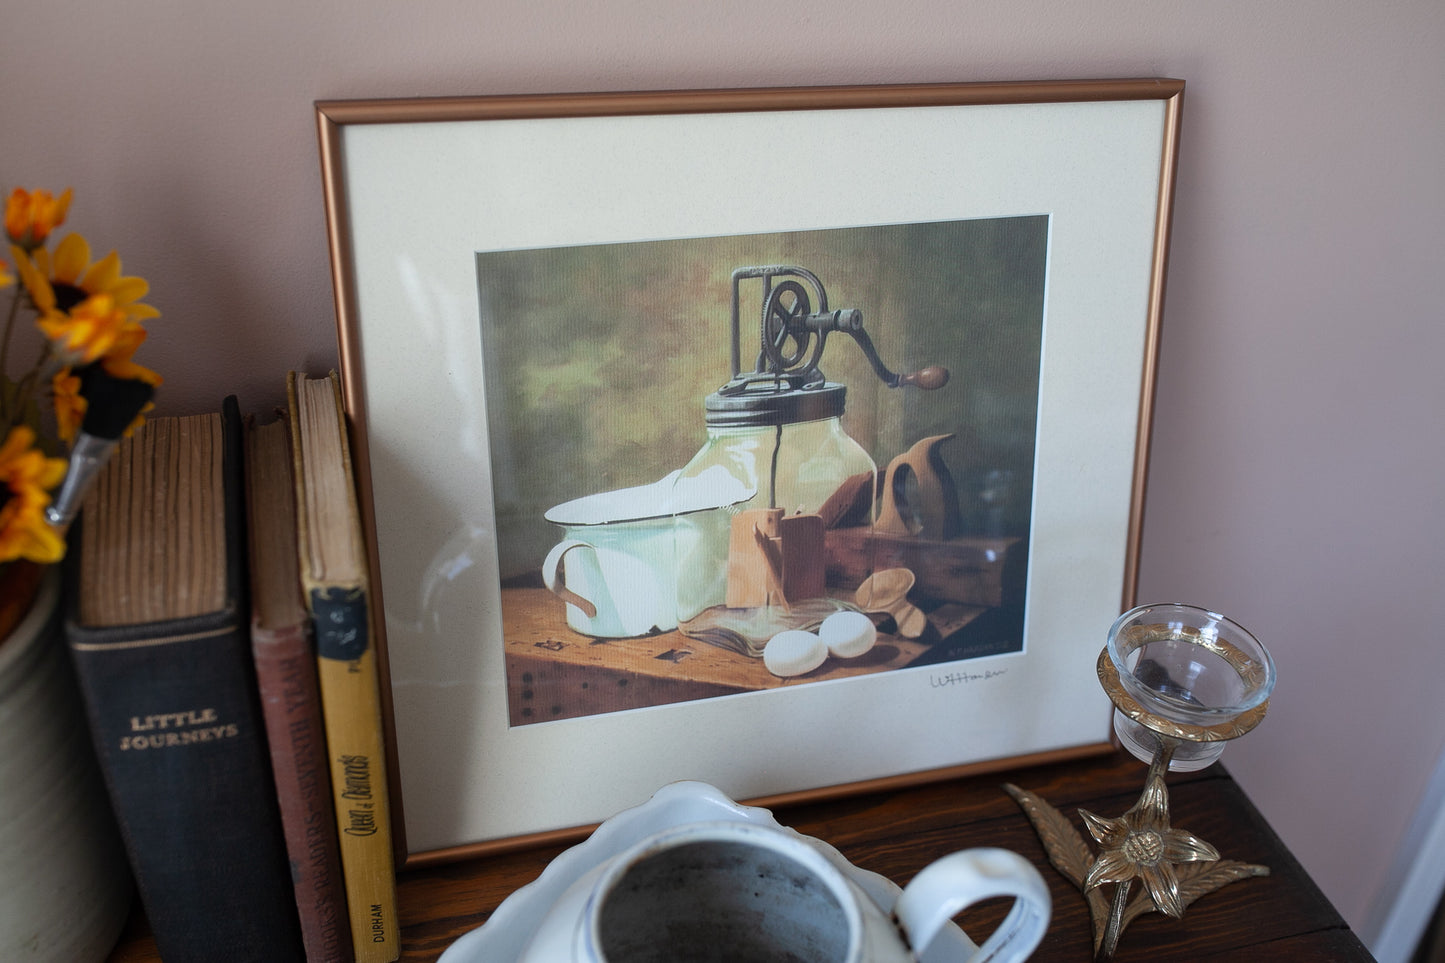 Vintage Artwork - Coffee Grinder Enamelware and wooden utensils- Kitchen Artwork Signed